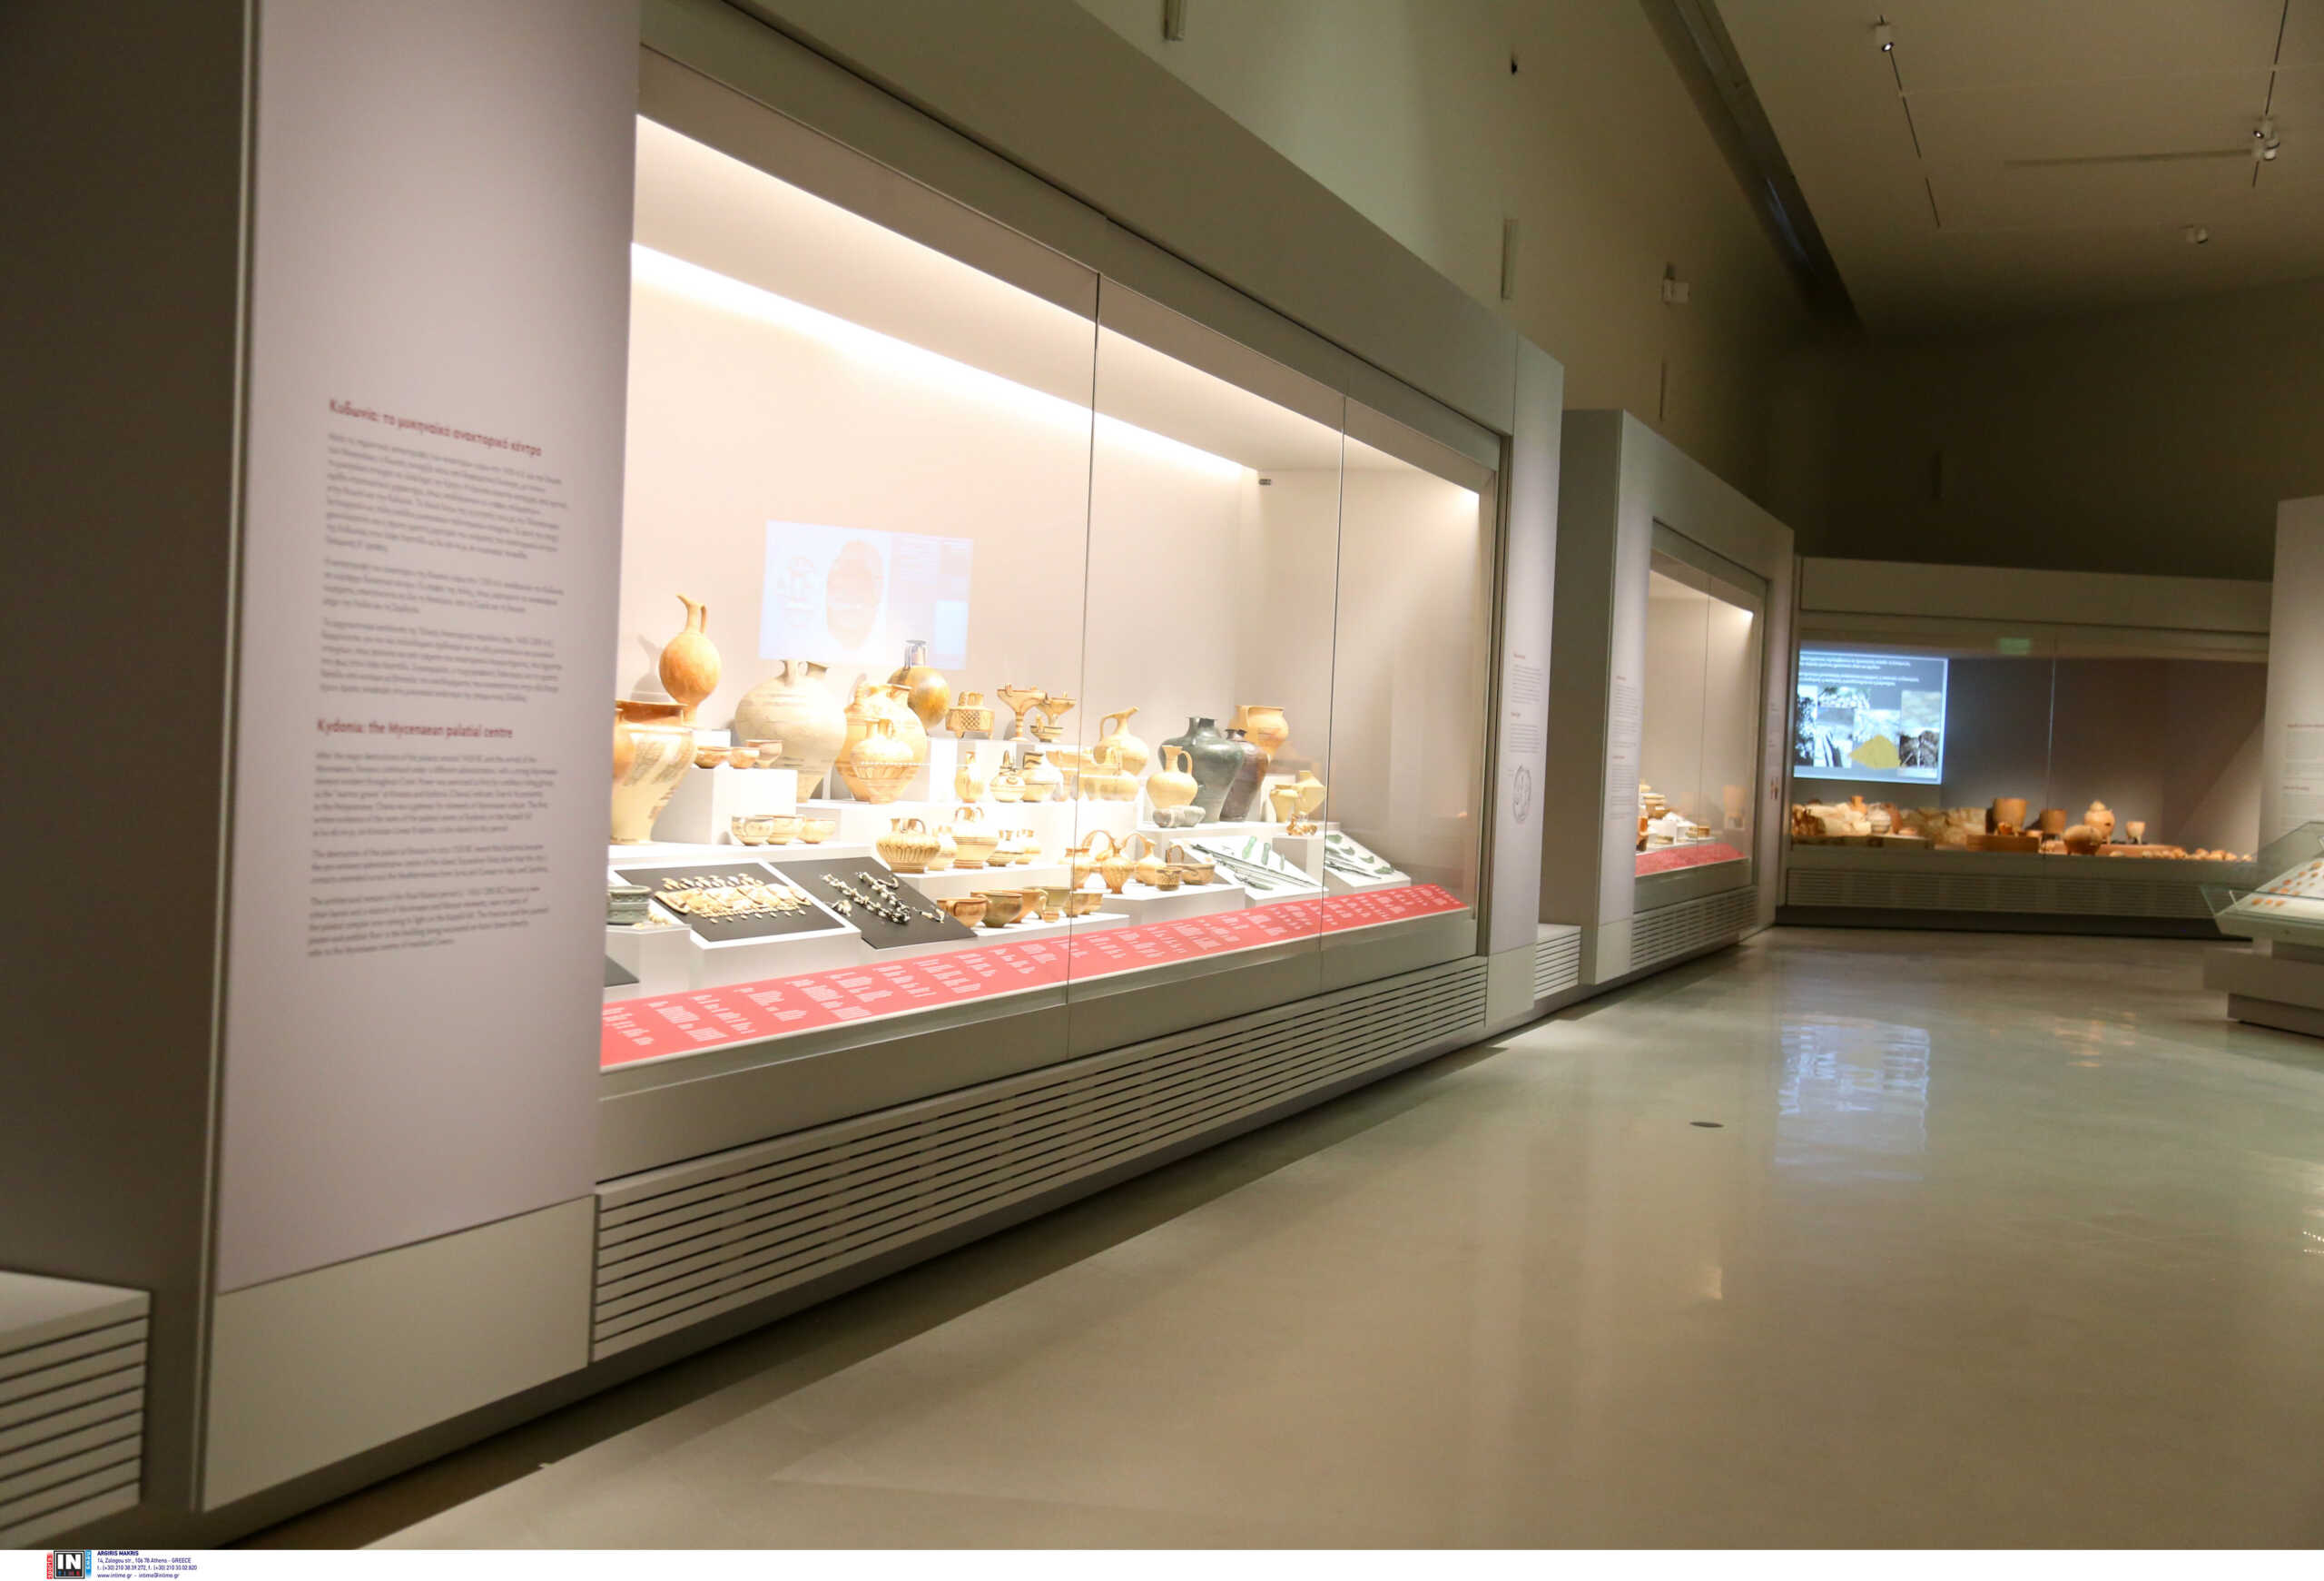 Γιορτές στο Εθνικό Αρχαιολογικό Μουσείο: Όλο το πρόγραμμα των εκδηλώσεων